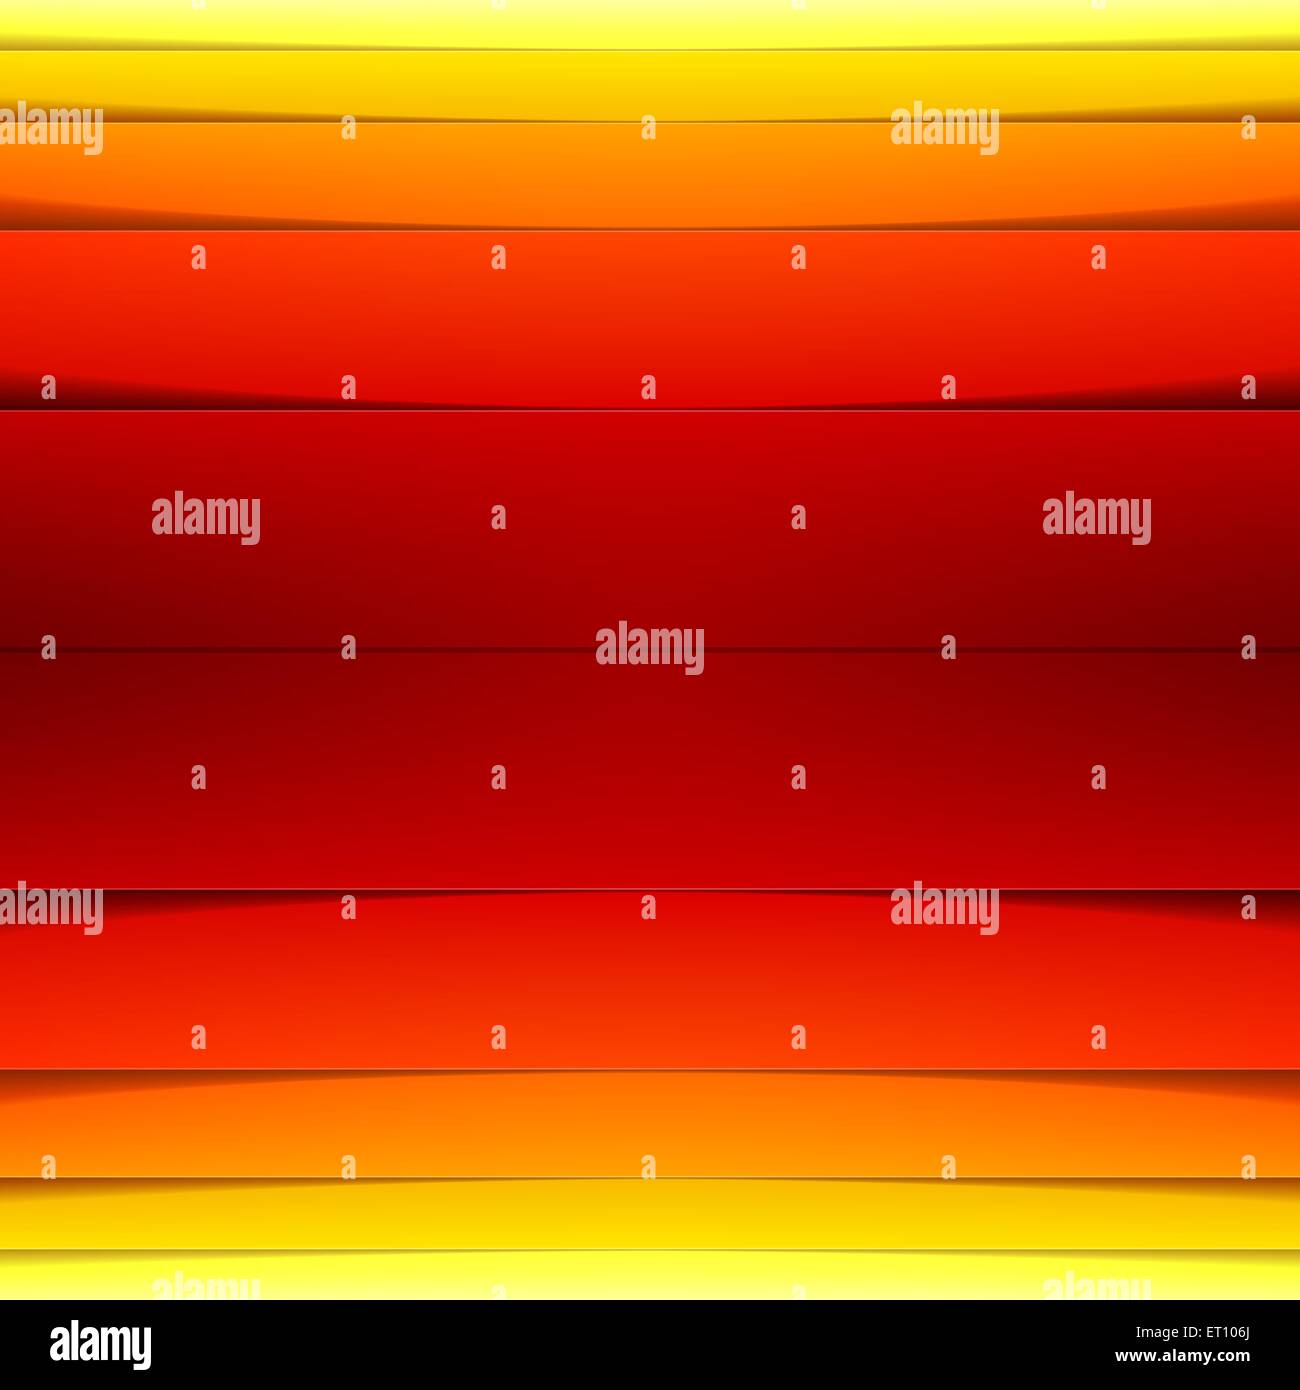 Abstract jaune, orange et rouge formes rectangle. Vecteur EPS RVB 10 Illustration de Vecteur